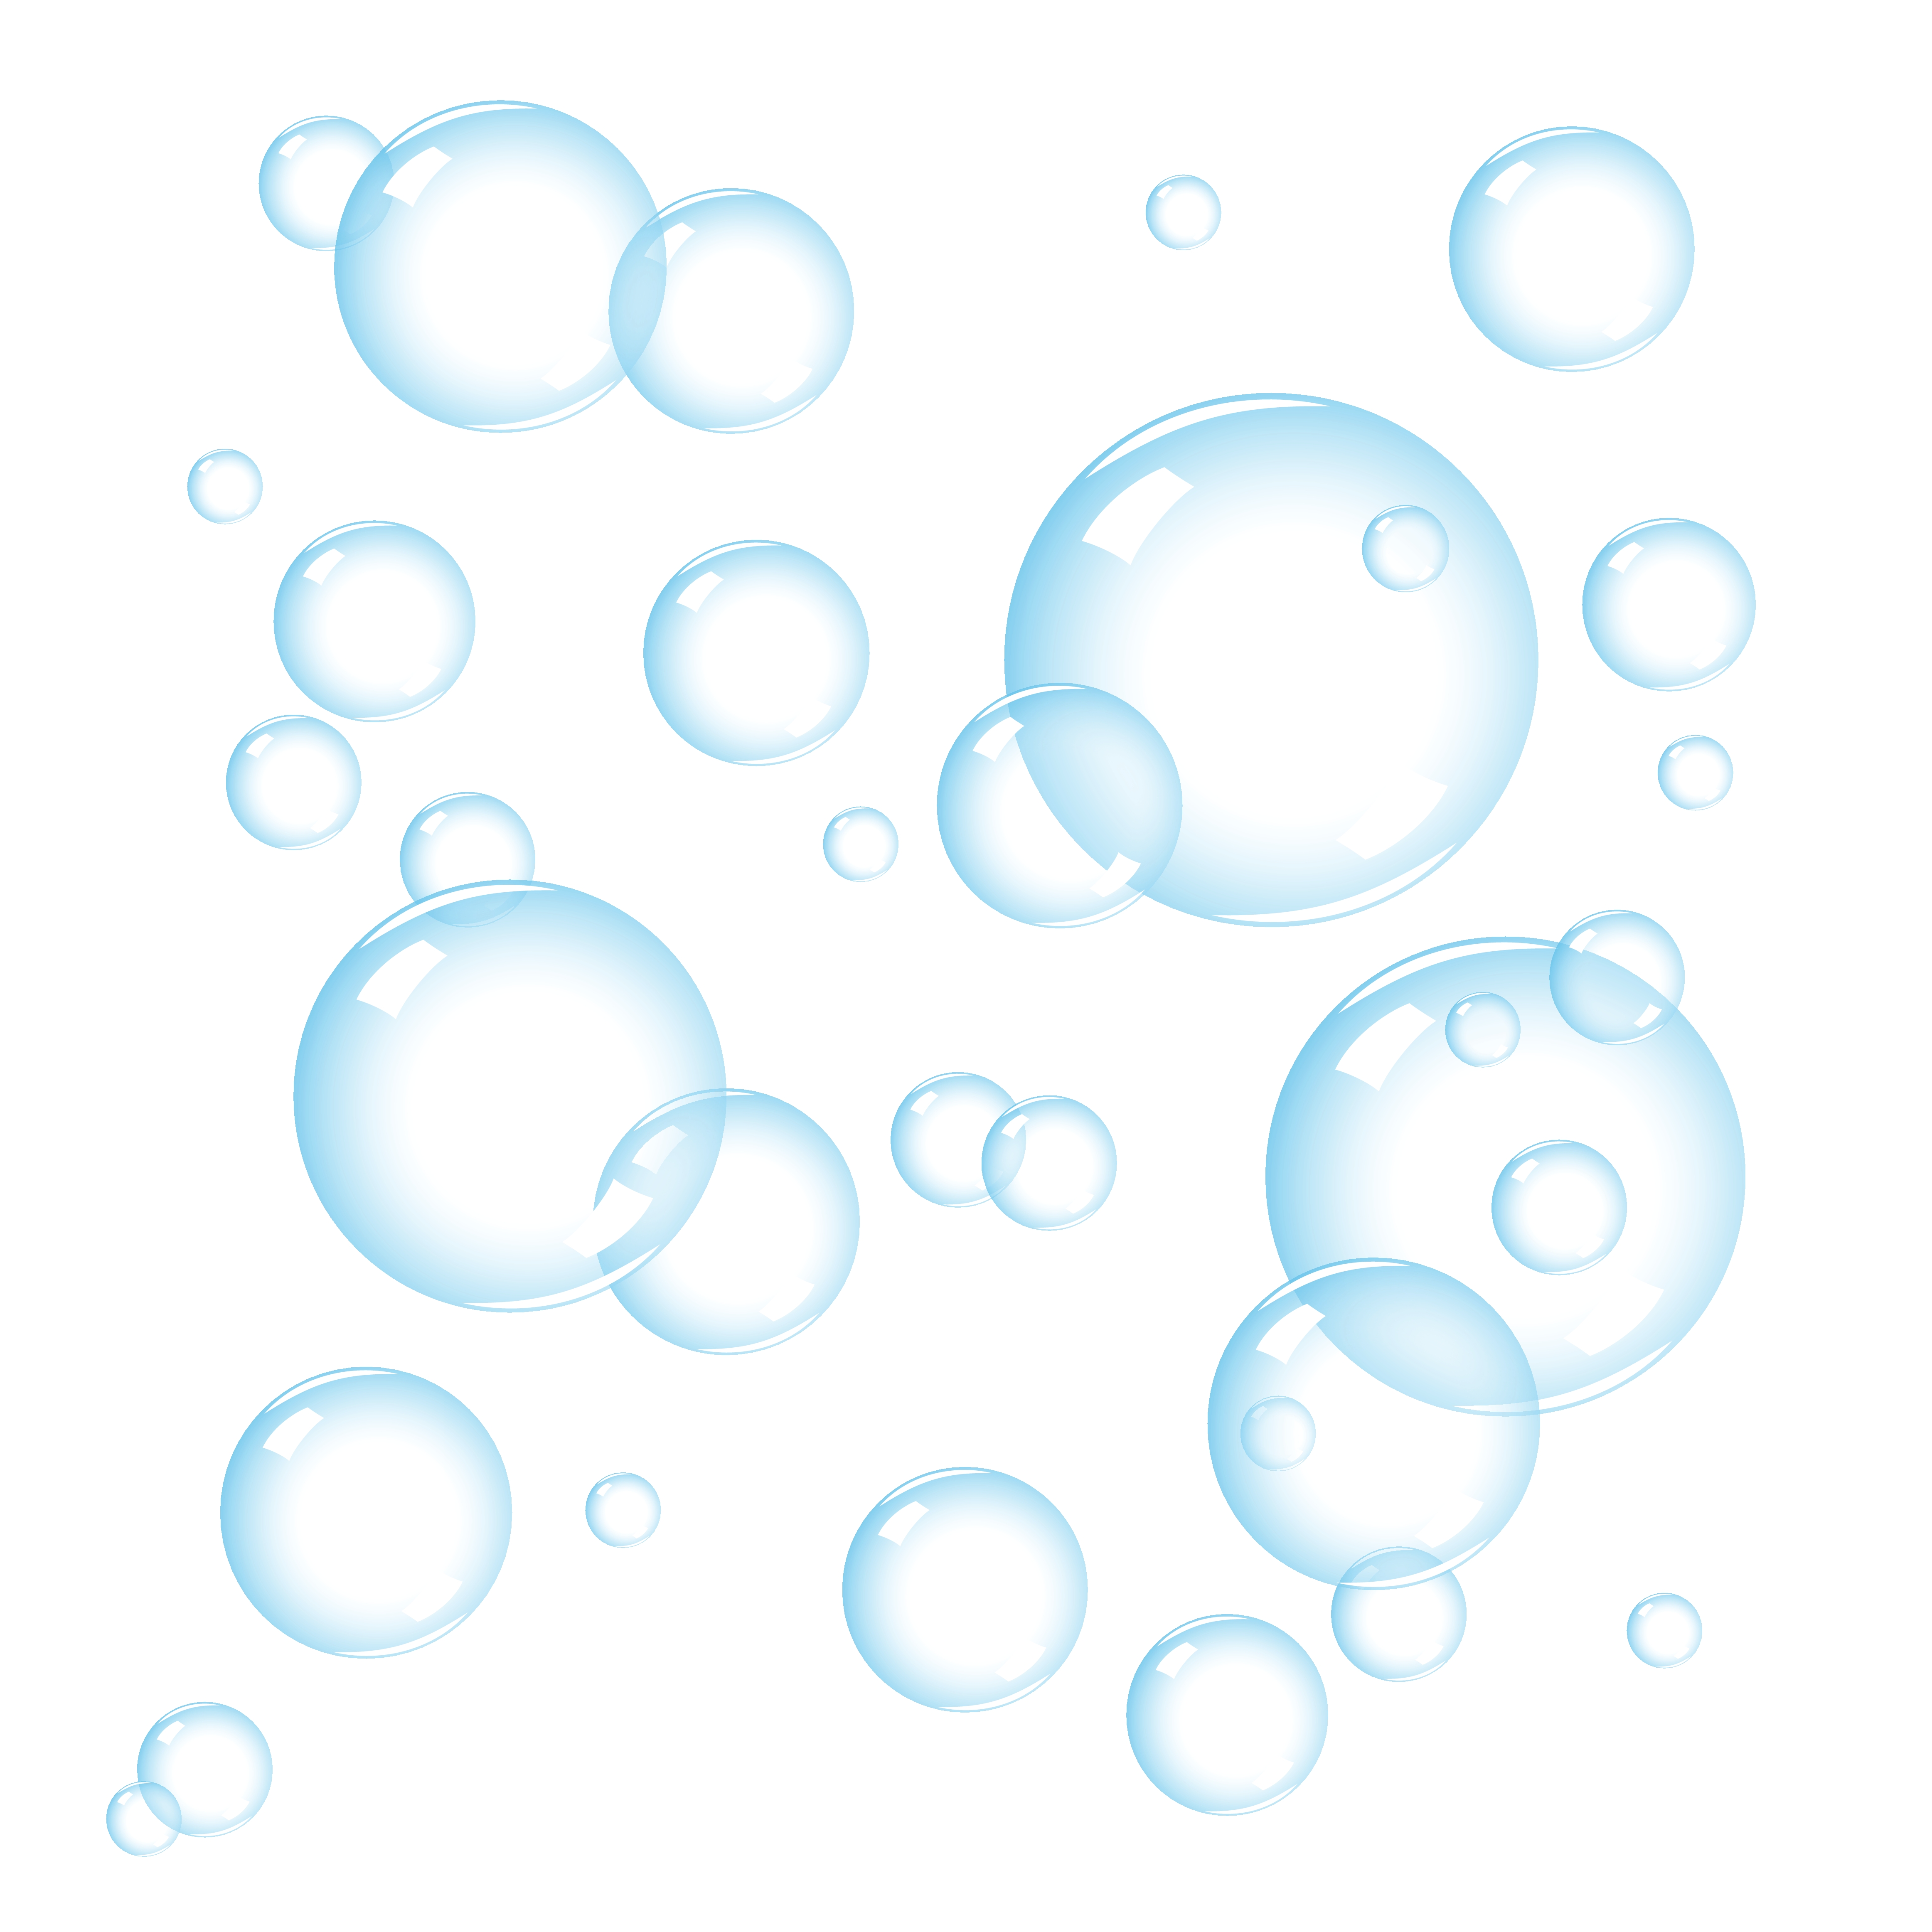 Bubbles clipart free.